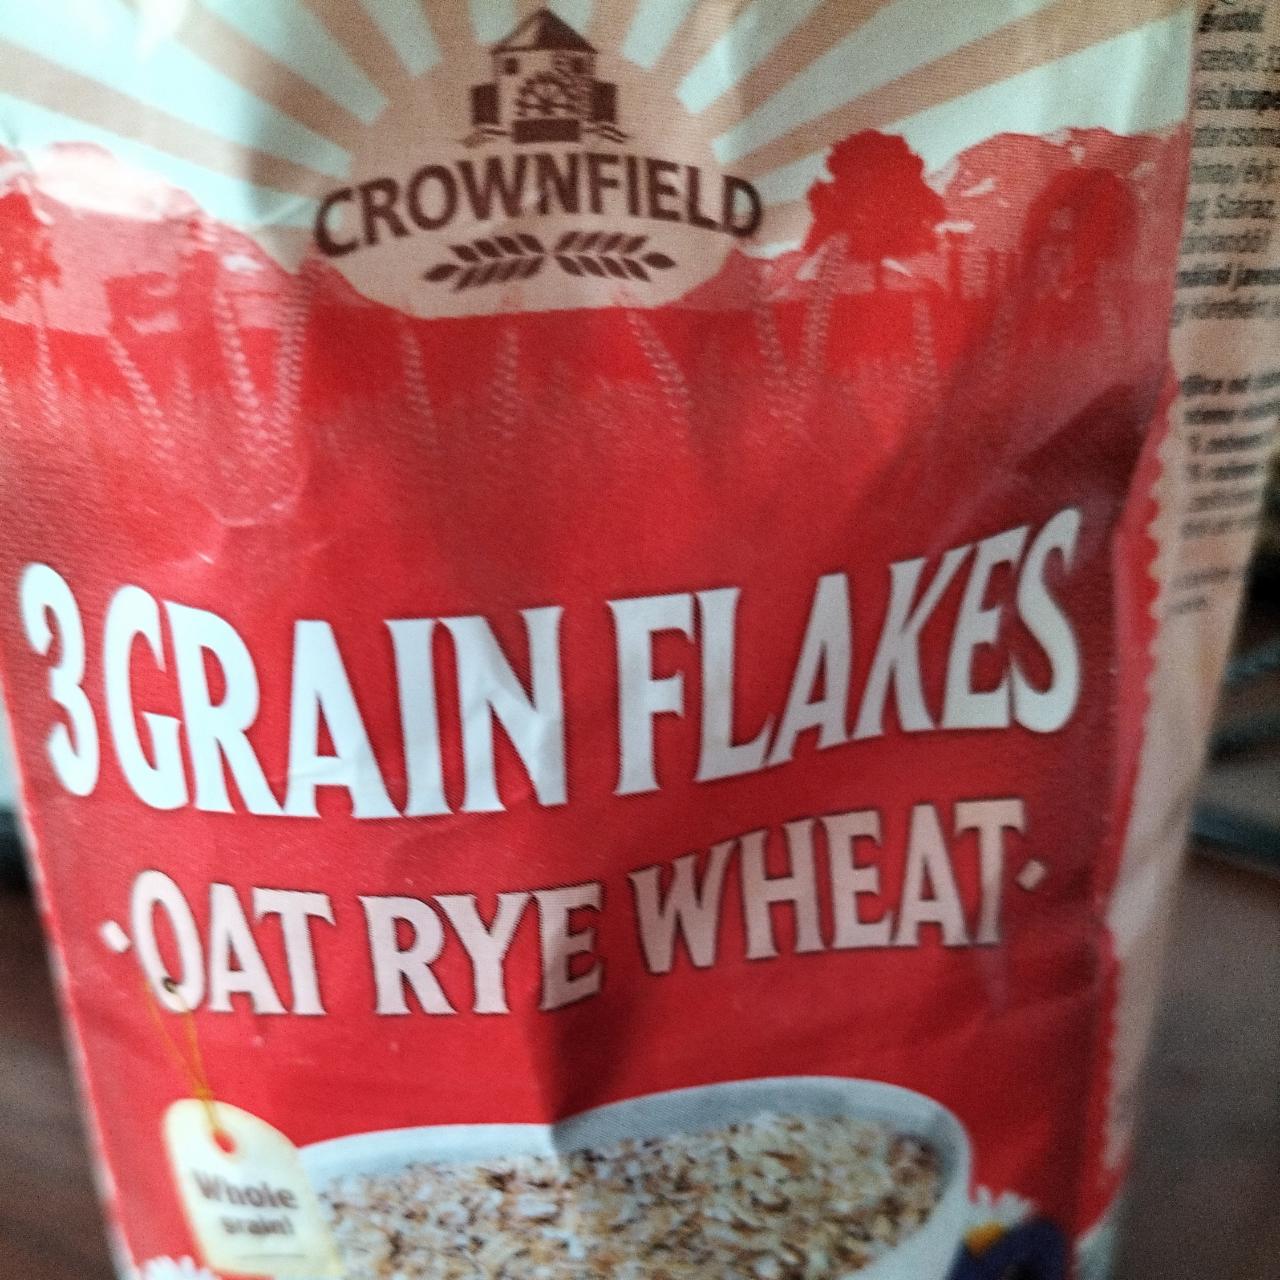 Zdjęcia - 3 grain flakes oat rye wheat Crownfield